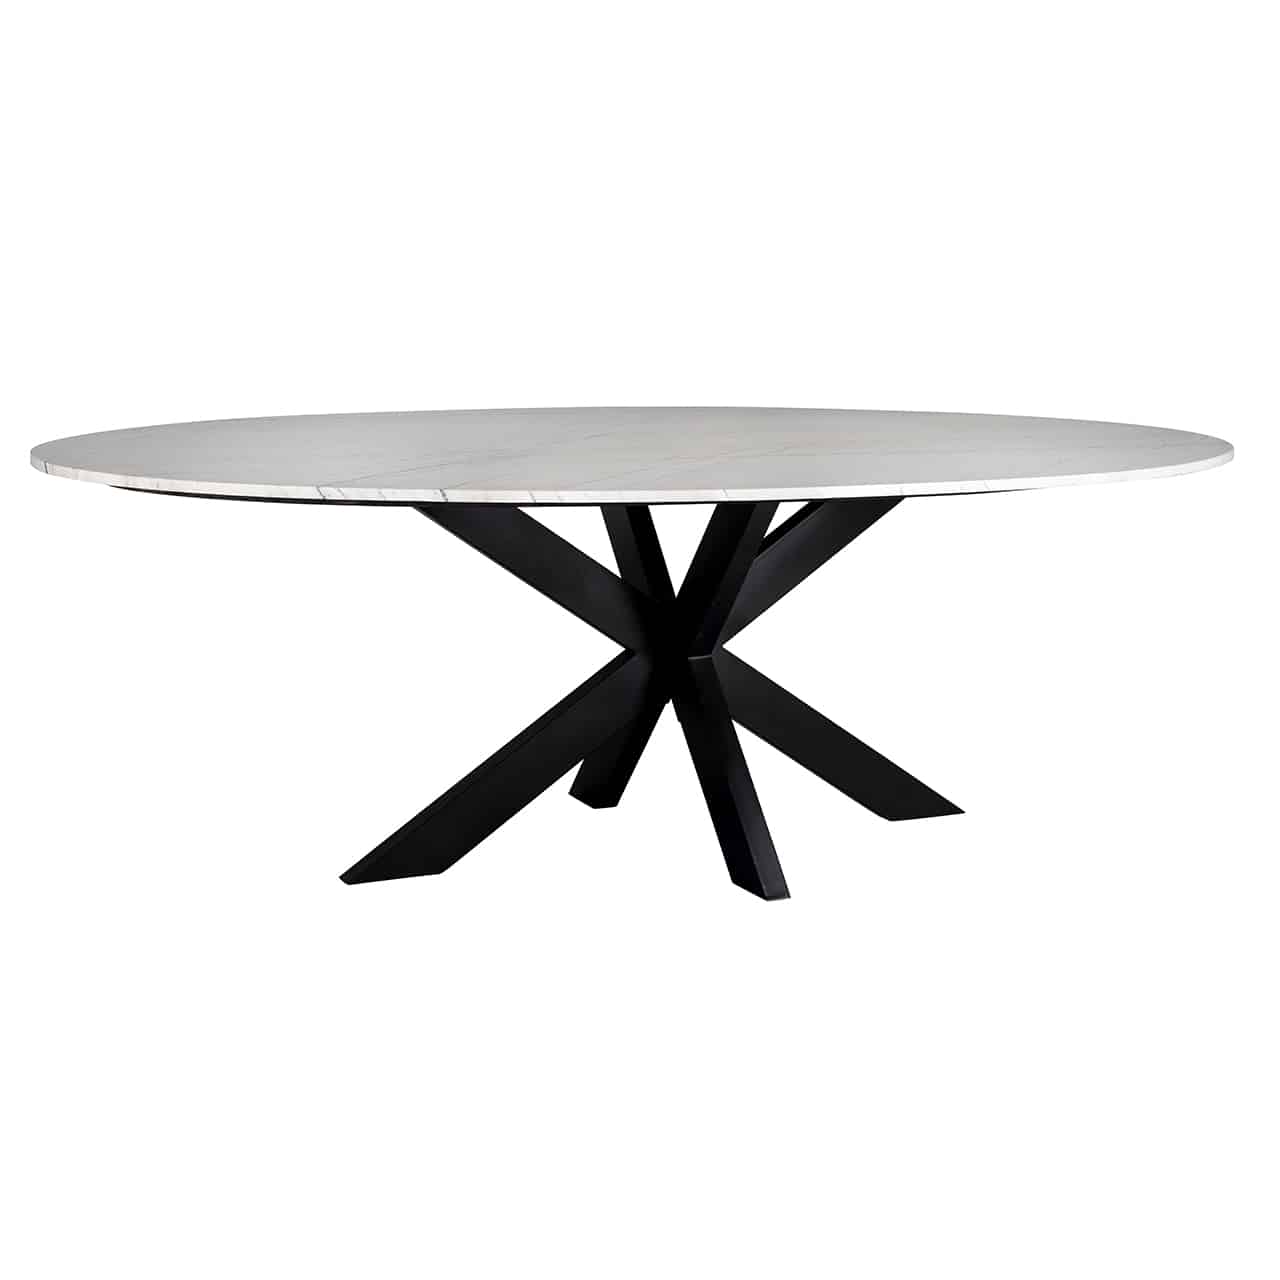 Esstisch mit einem Tischgestell aus sternförmig angeordneten Planken aus schwarzem  Eisen  und einer ovalen Tischplatte aus weißem Carrara Marmor.